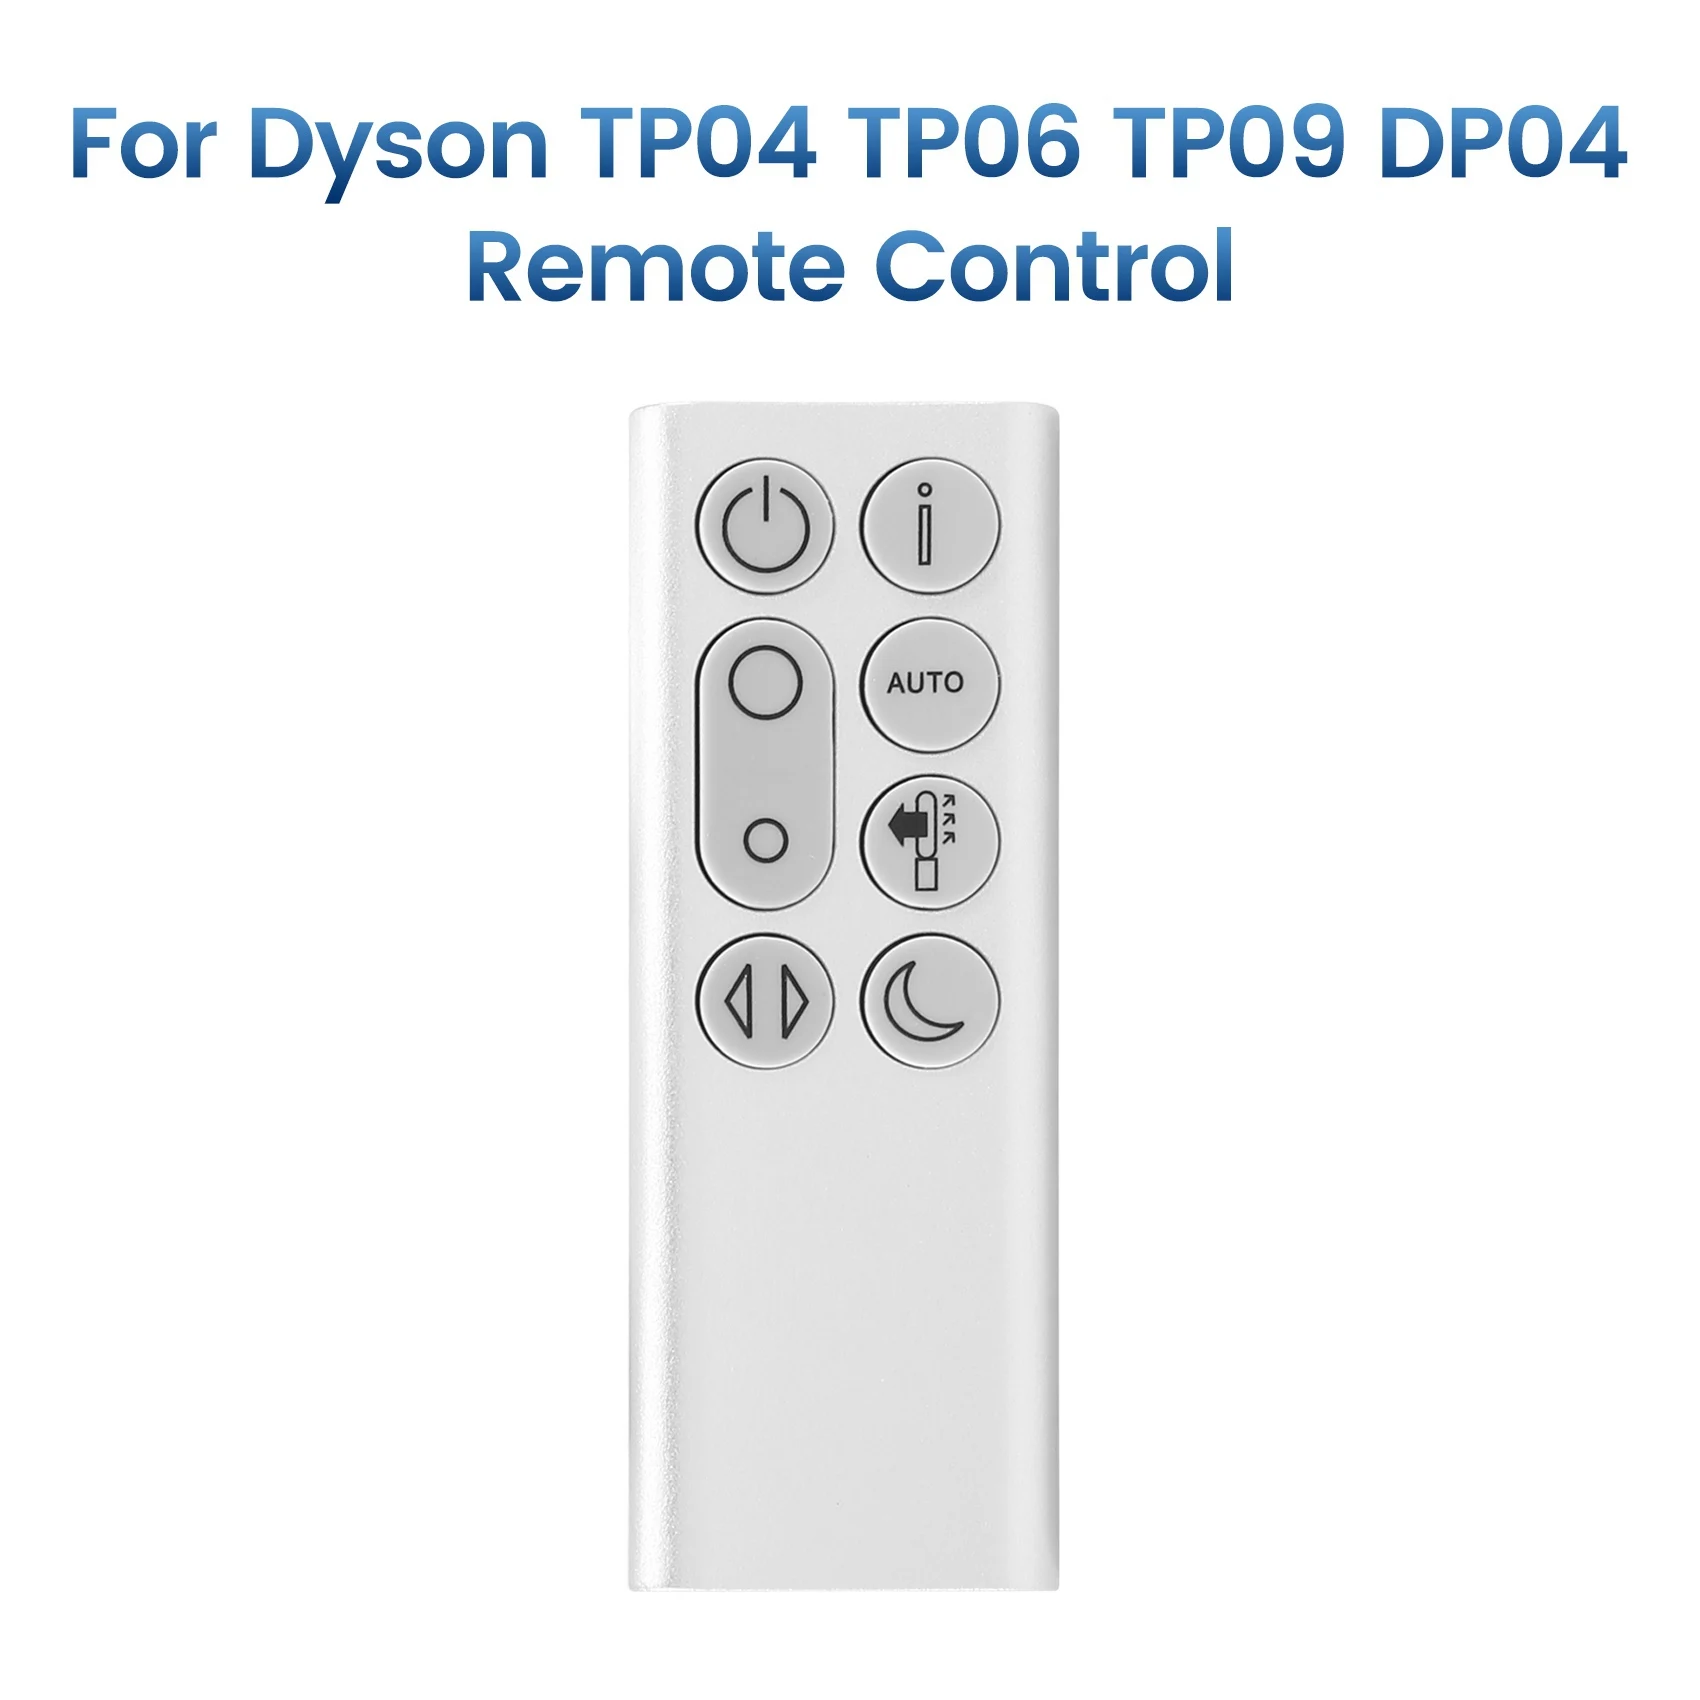 Náhradní Dálkové Ovládání pro Dyson Čistý Chladný TP04 TP06 TP09 DP04 Čištění Ventilátoru Dálkové Ovládání(Stříbrné) - 4